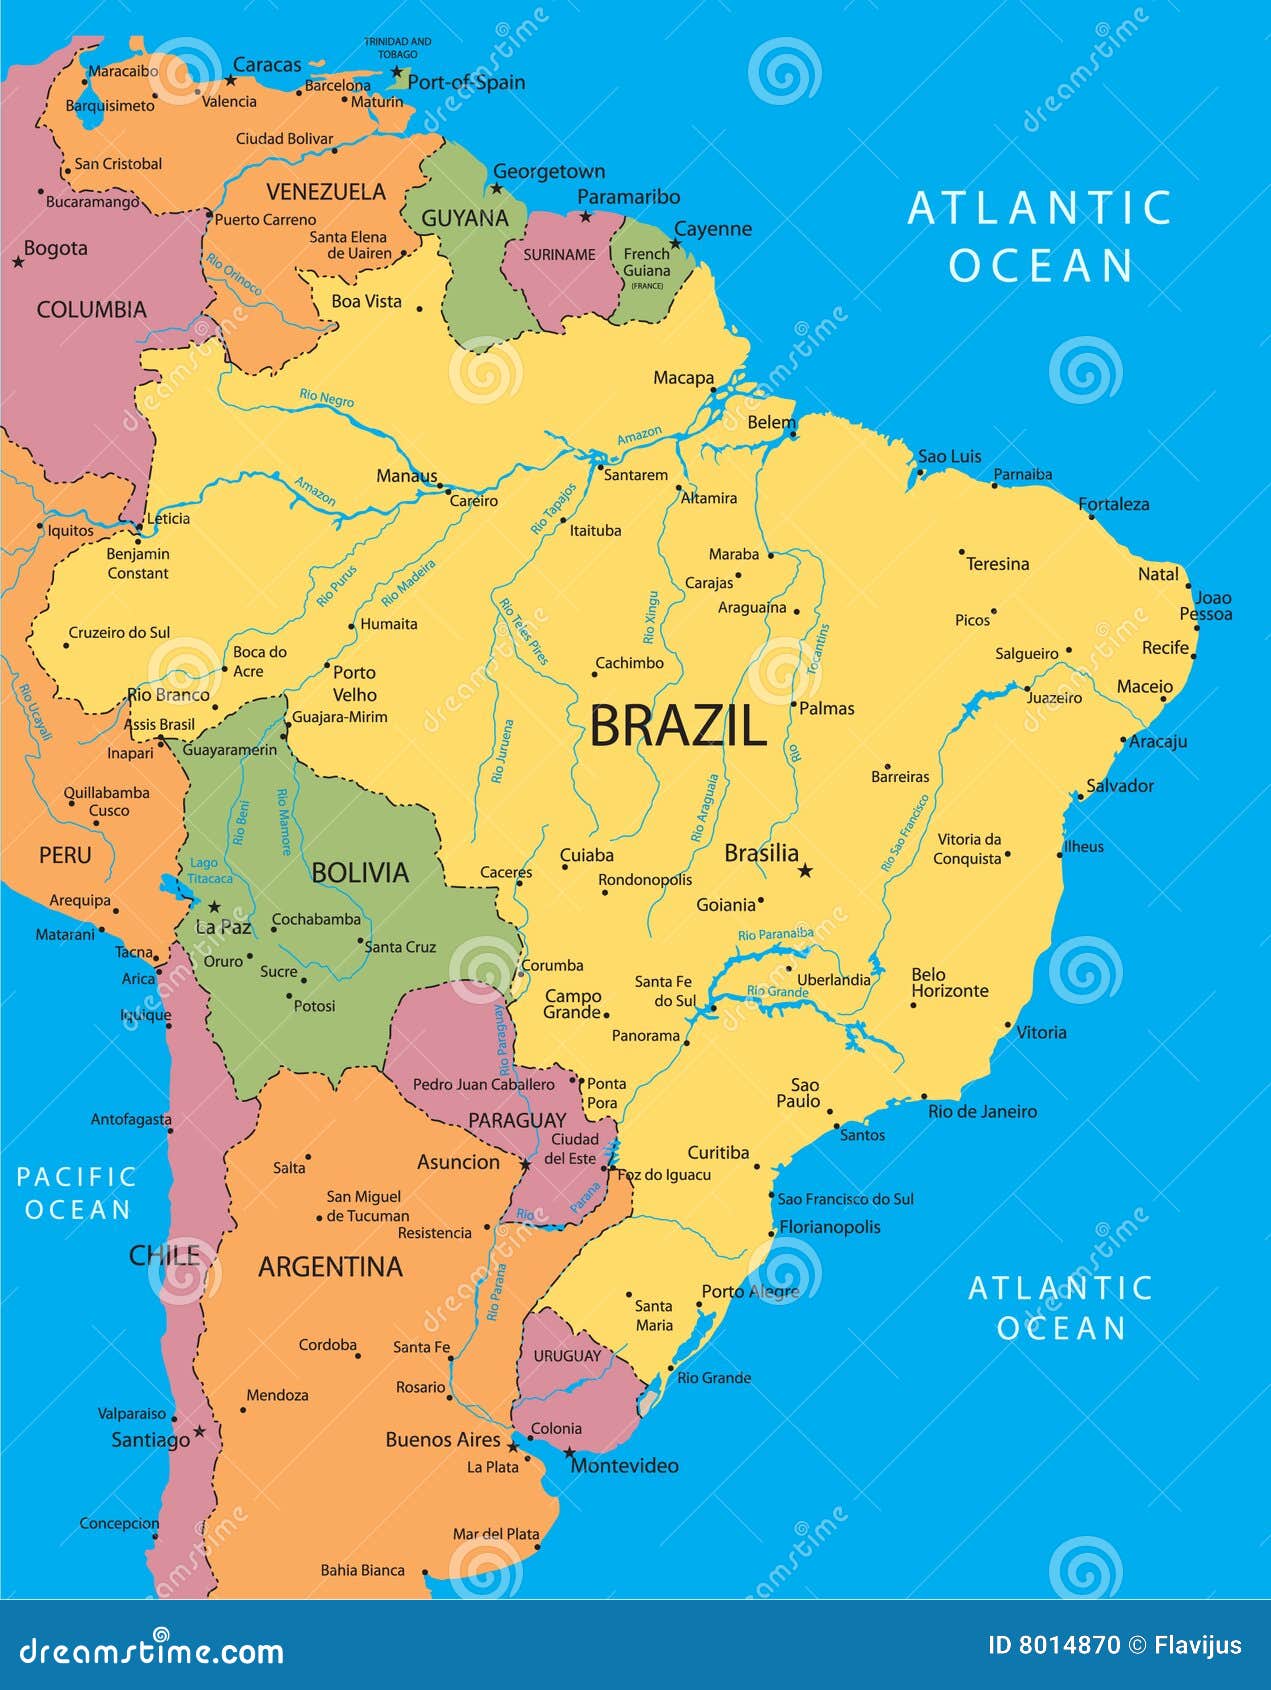 brazil-vector-map-8014870.jpg